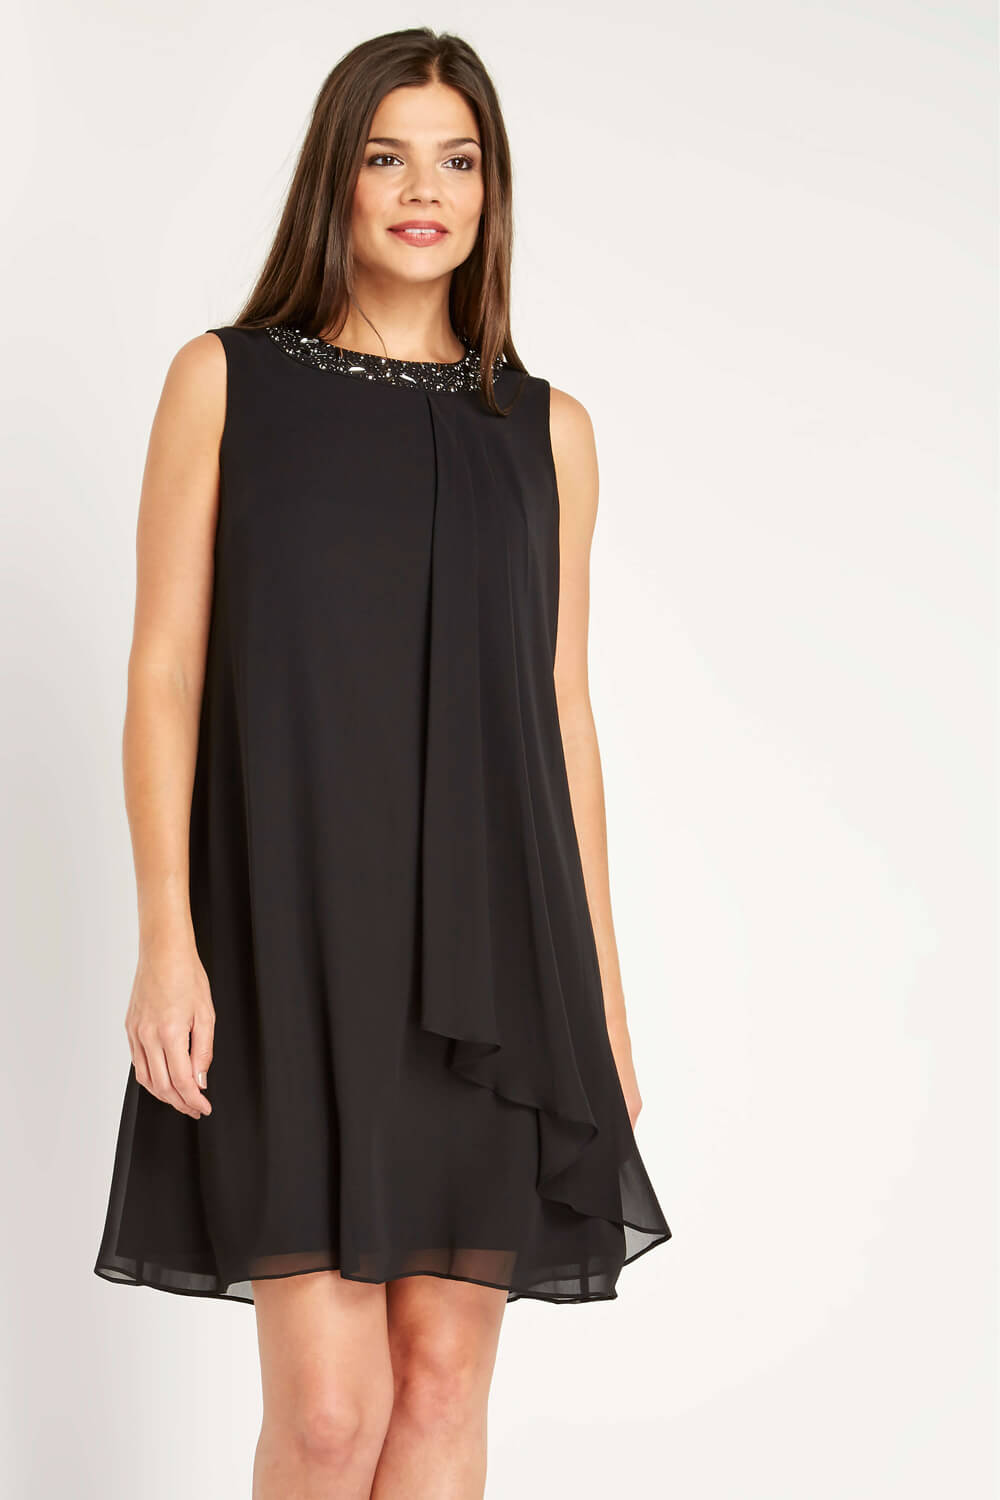 black embellished dress uk